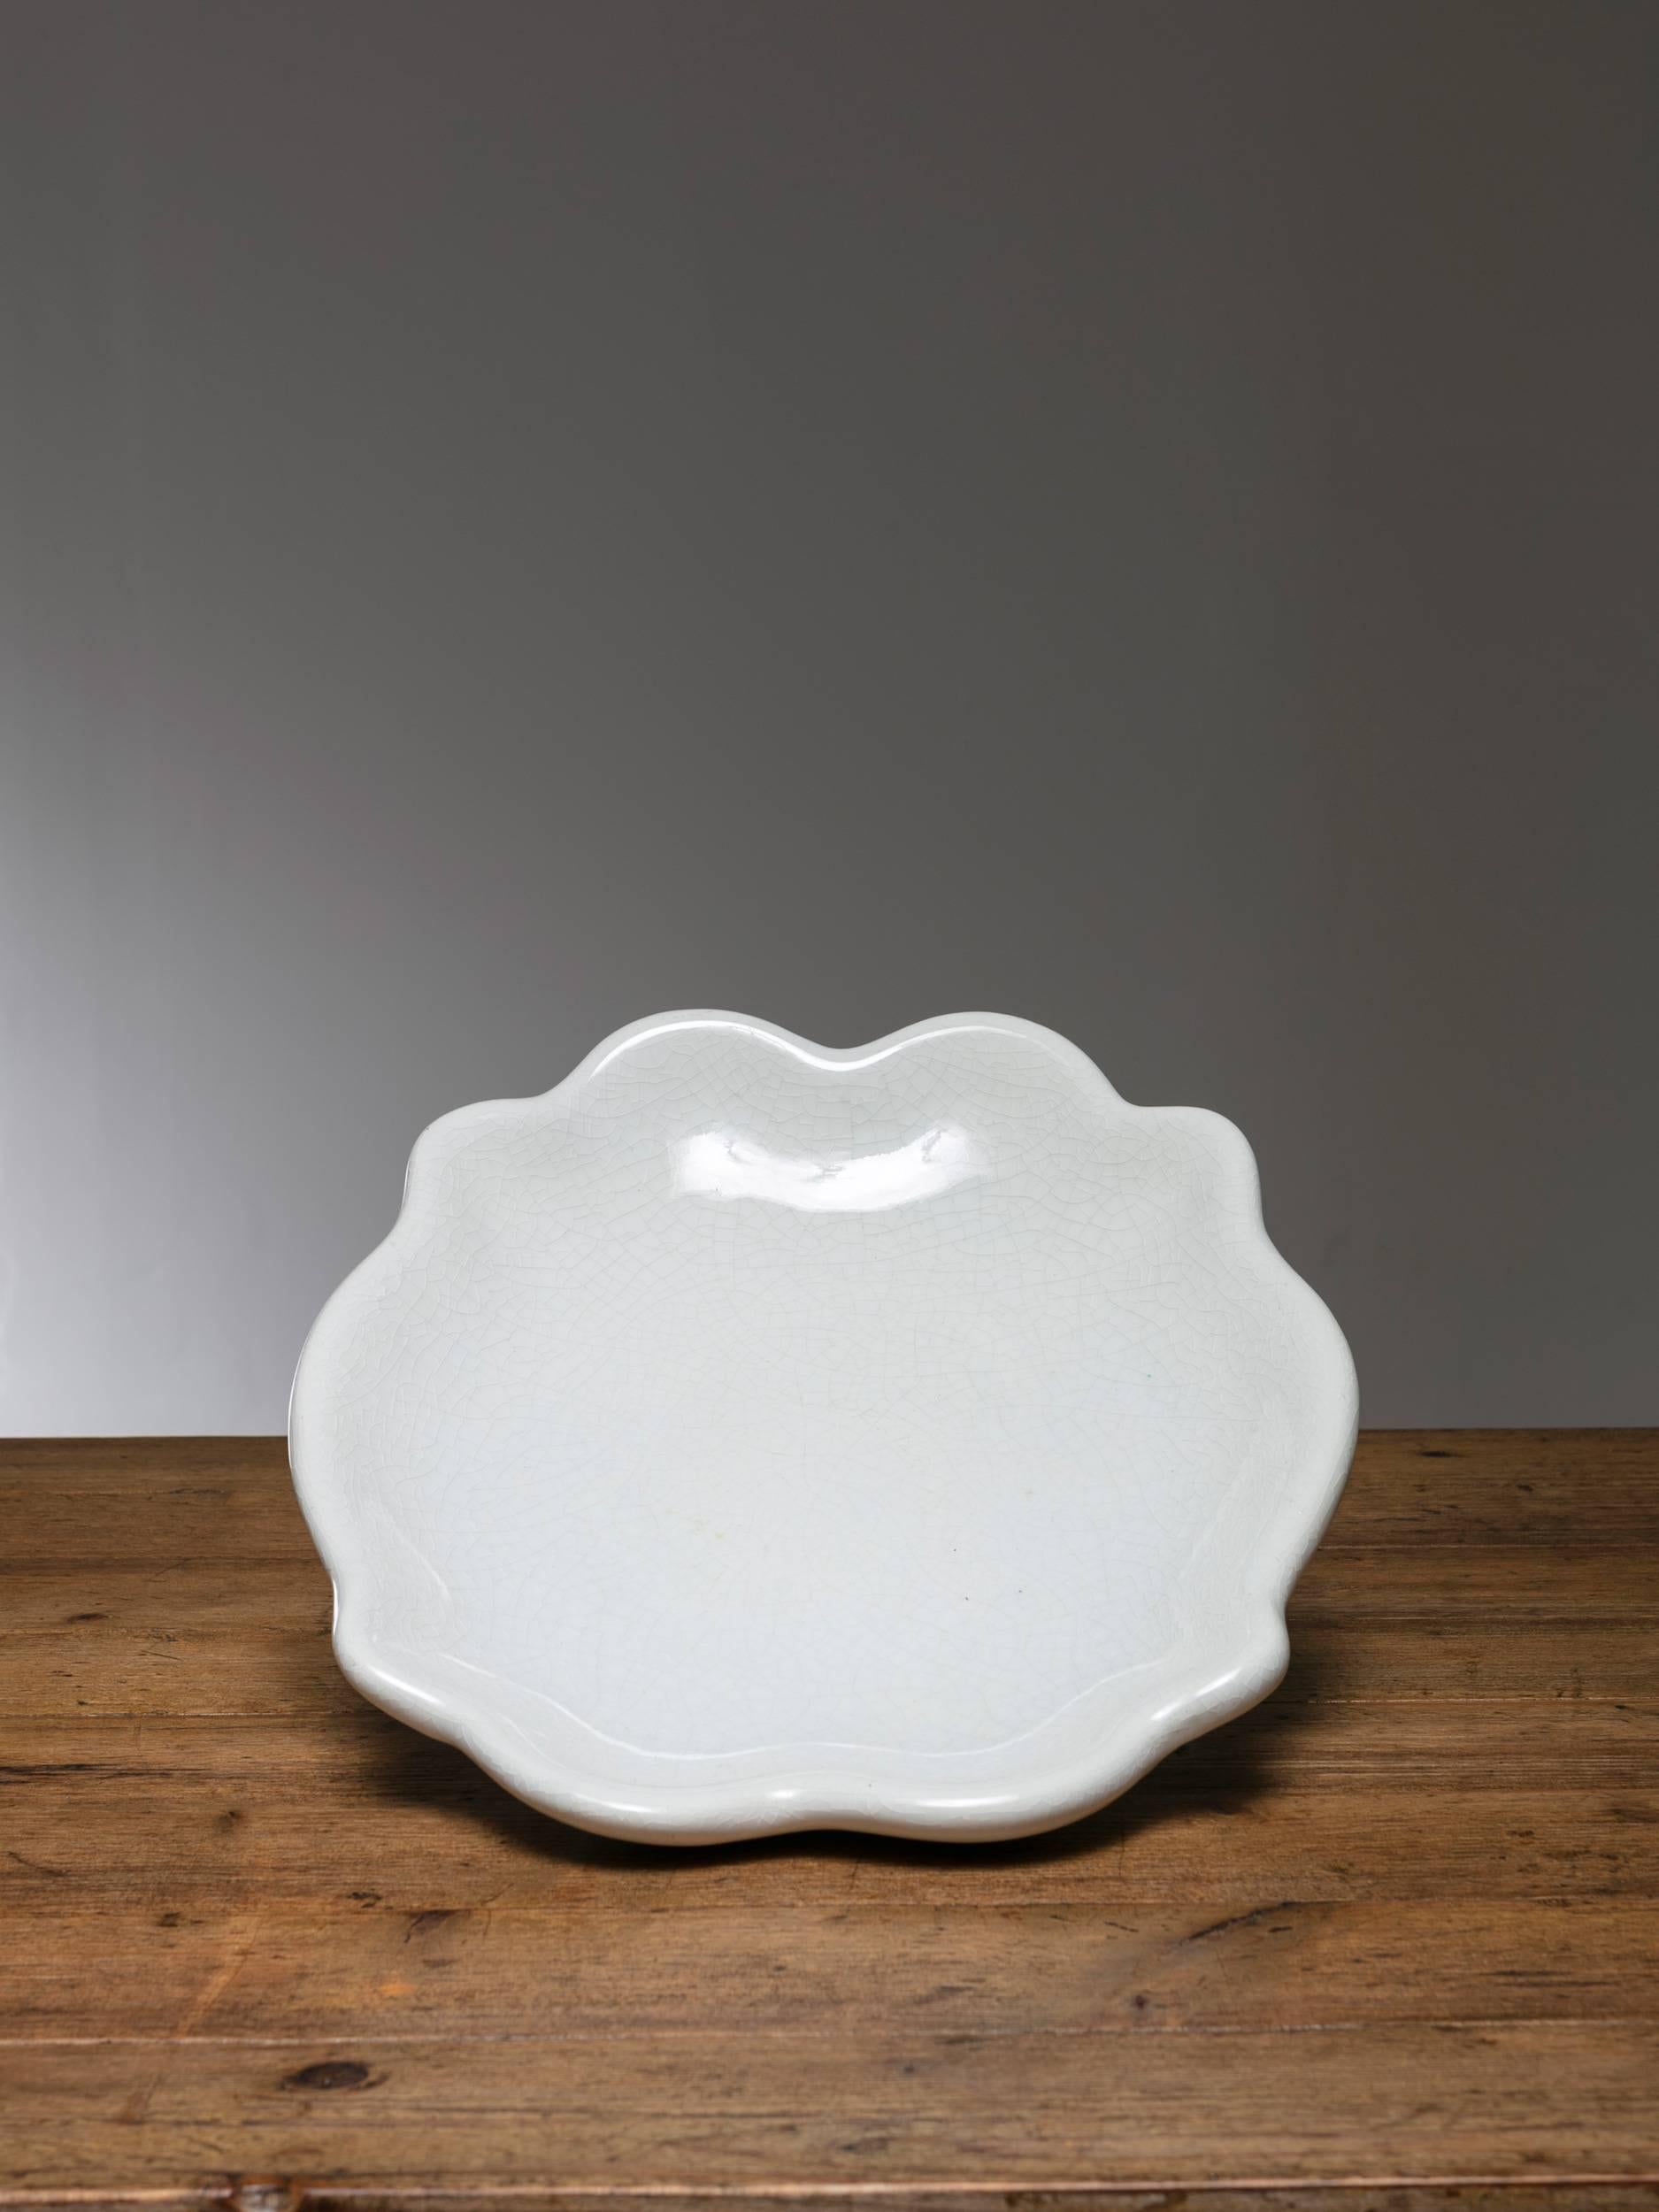 Large enameled ceramic bowl manufactured by San Cristoforo, Richard GInori.
  